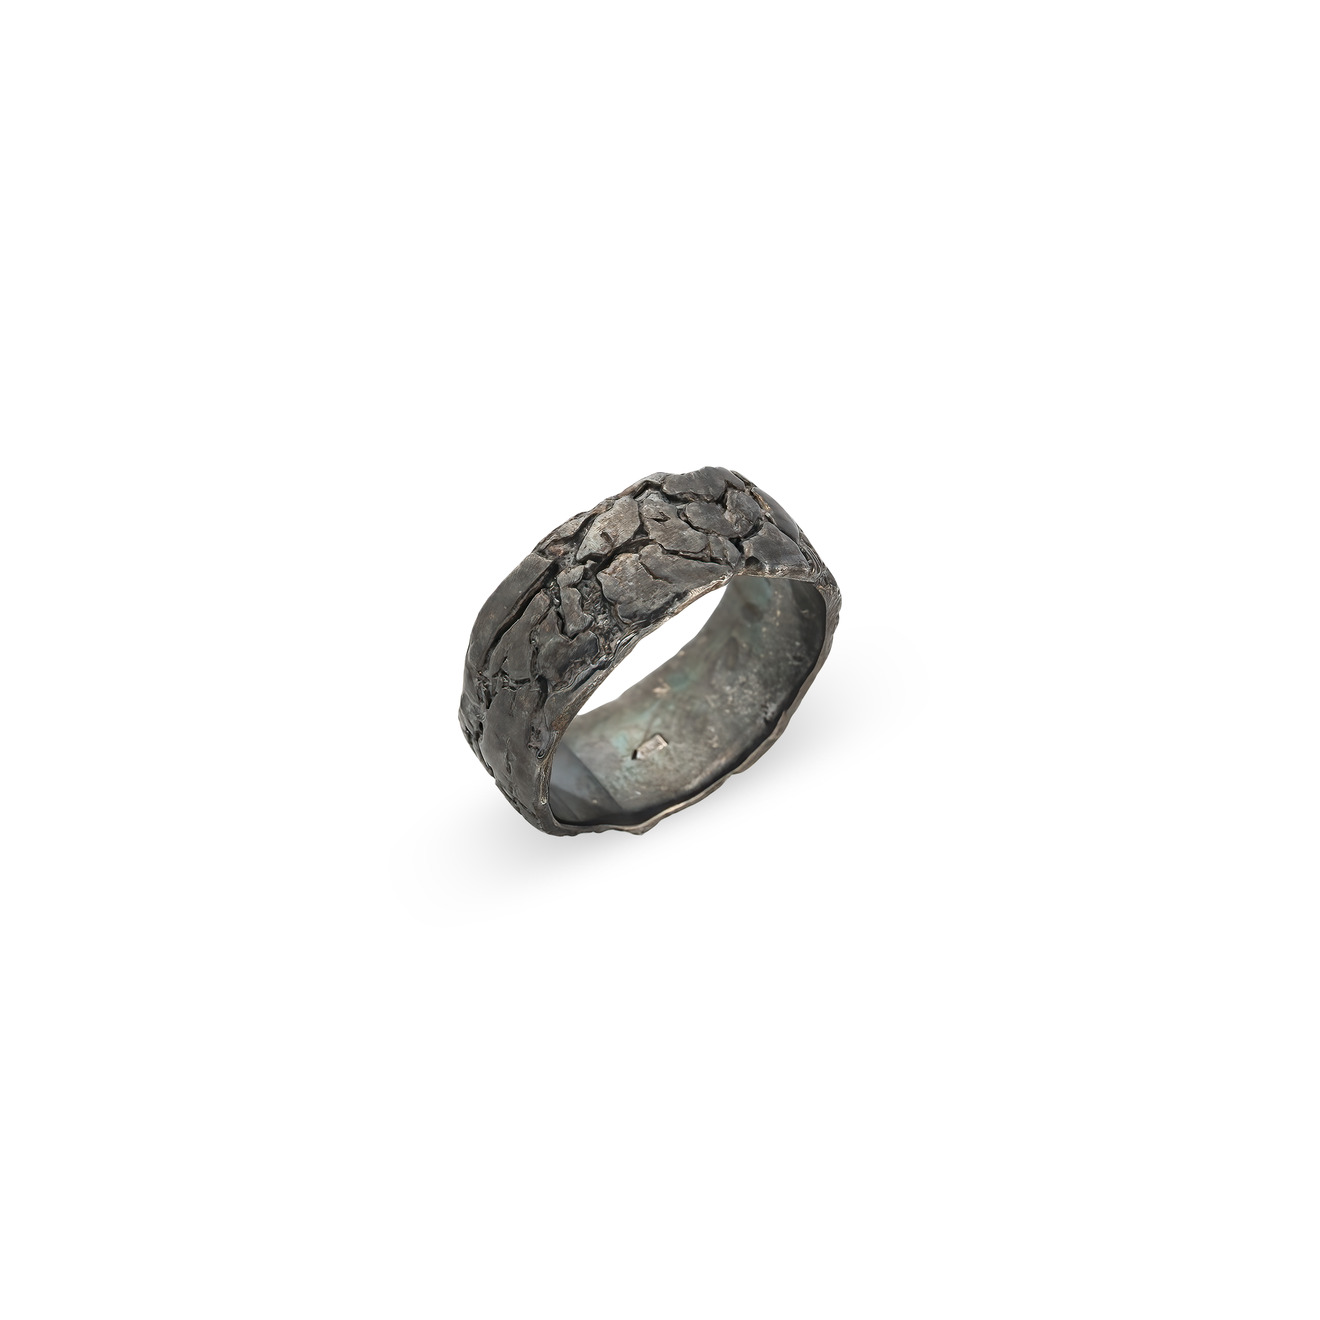 Kintsugi Jewelry Кольцо Milestone из серебра kintsugi jewelry кольцо wild power из серебра